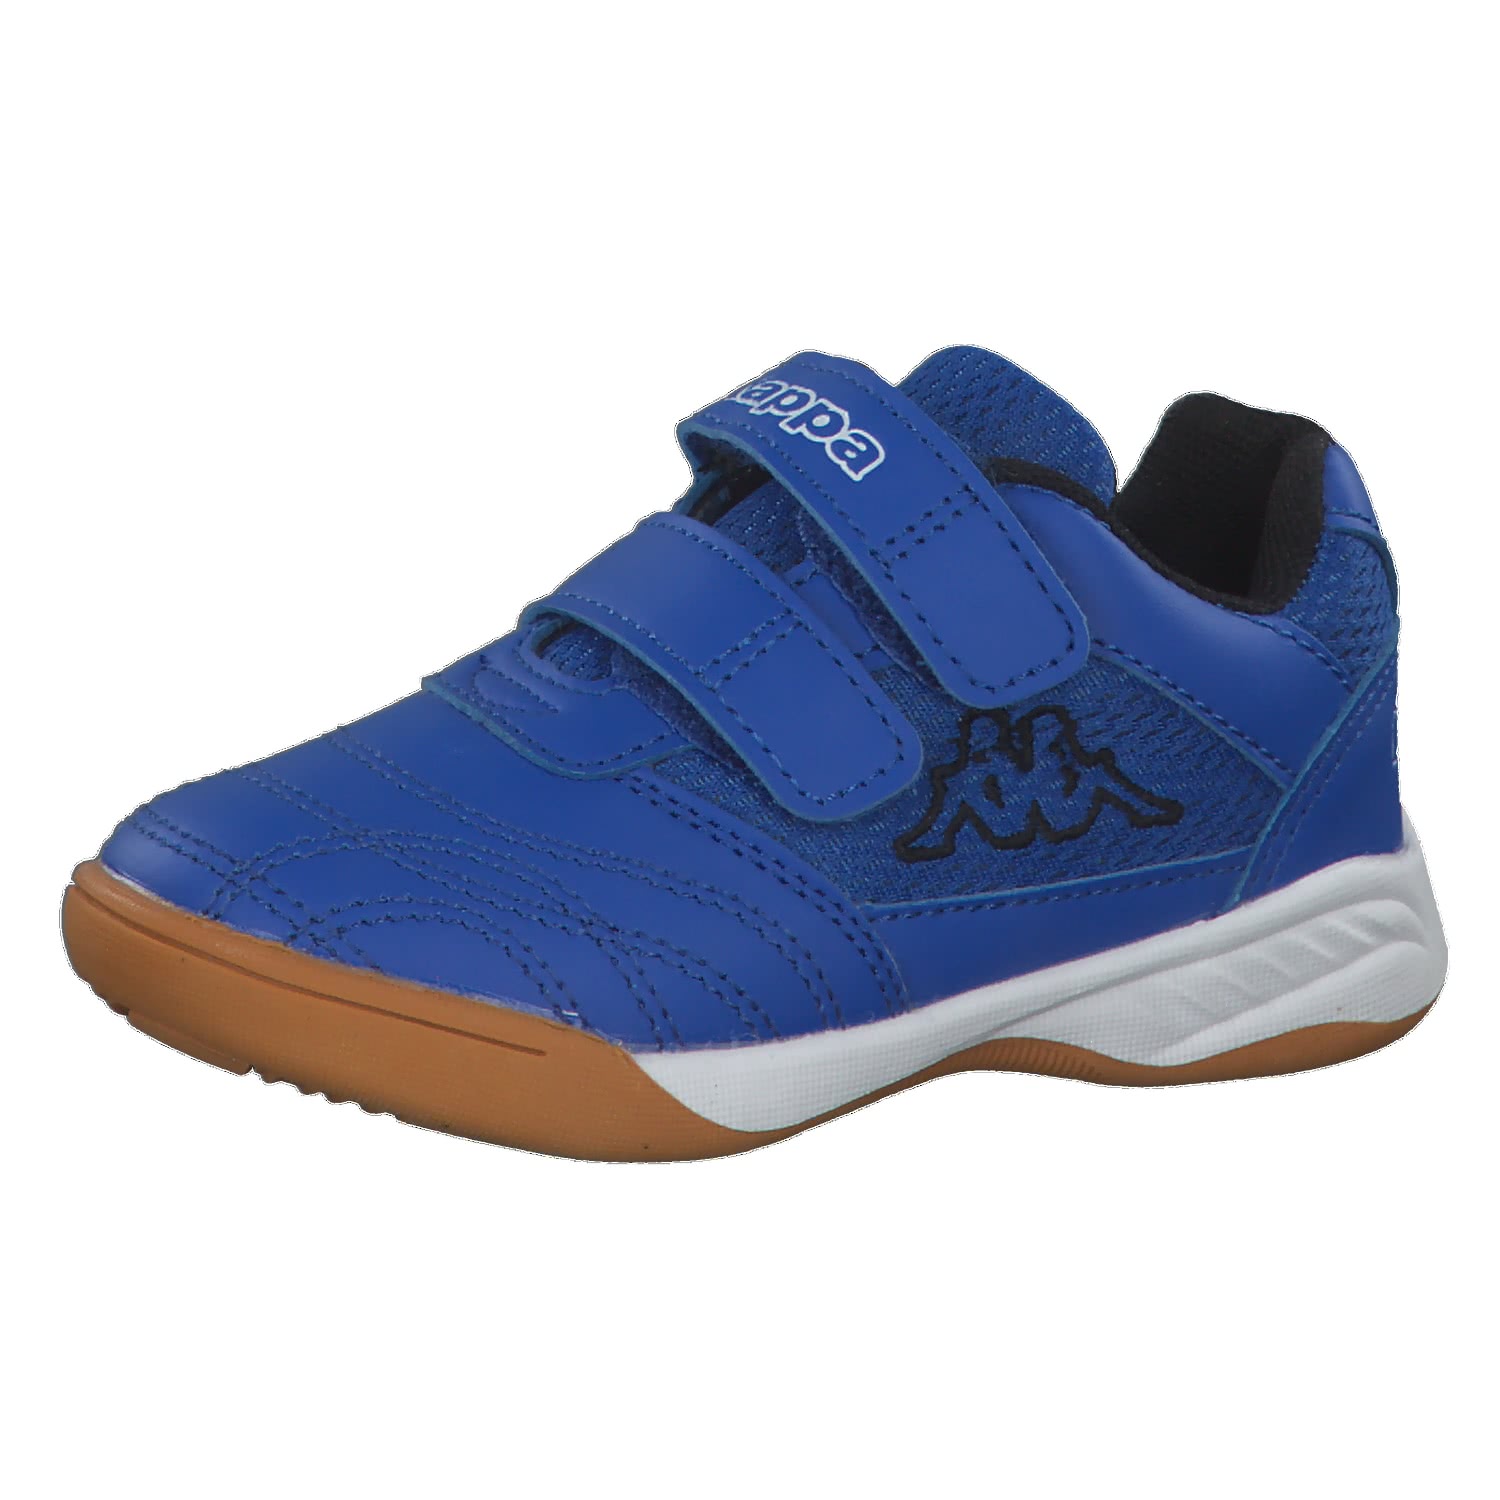 KAPPA Jungen Sneaker royalblau Gr.31 mit Klettverschluss NEU mit Etikett  online kaufen | eBay